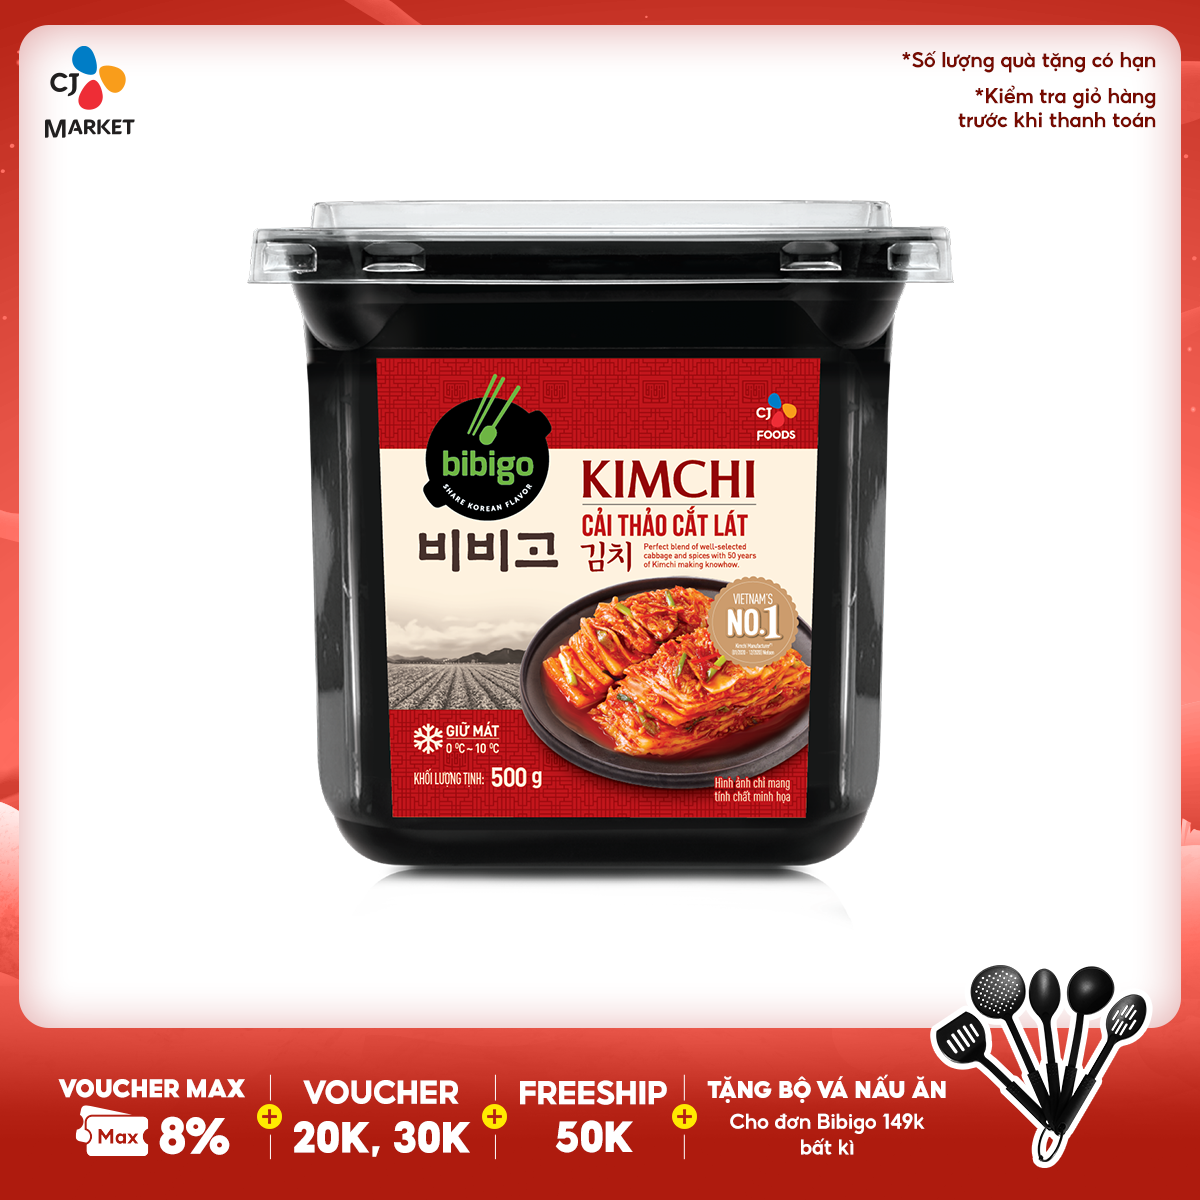 HCM & HN Kim chi Bibigo cải thảo cắt lát hộp 500g Chay Mặn